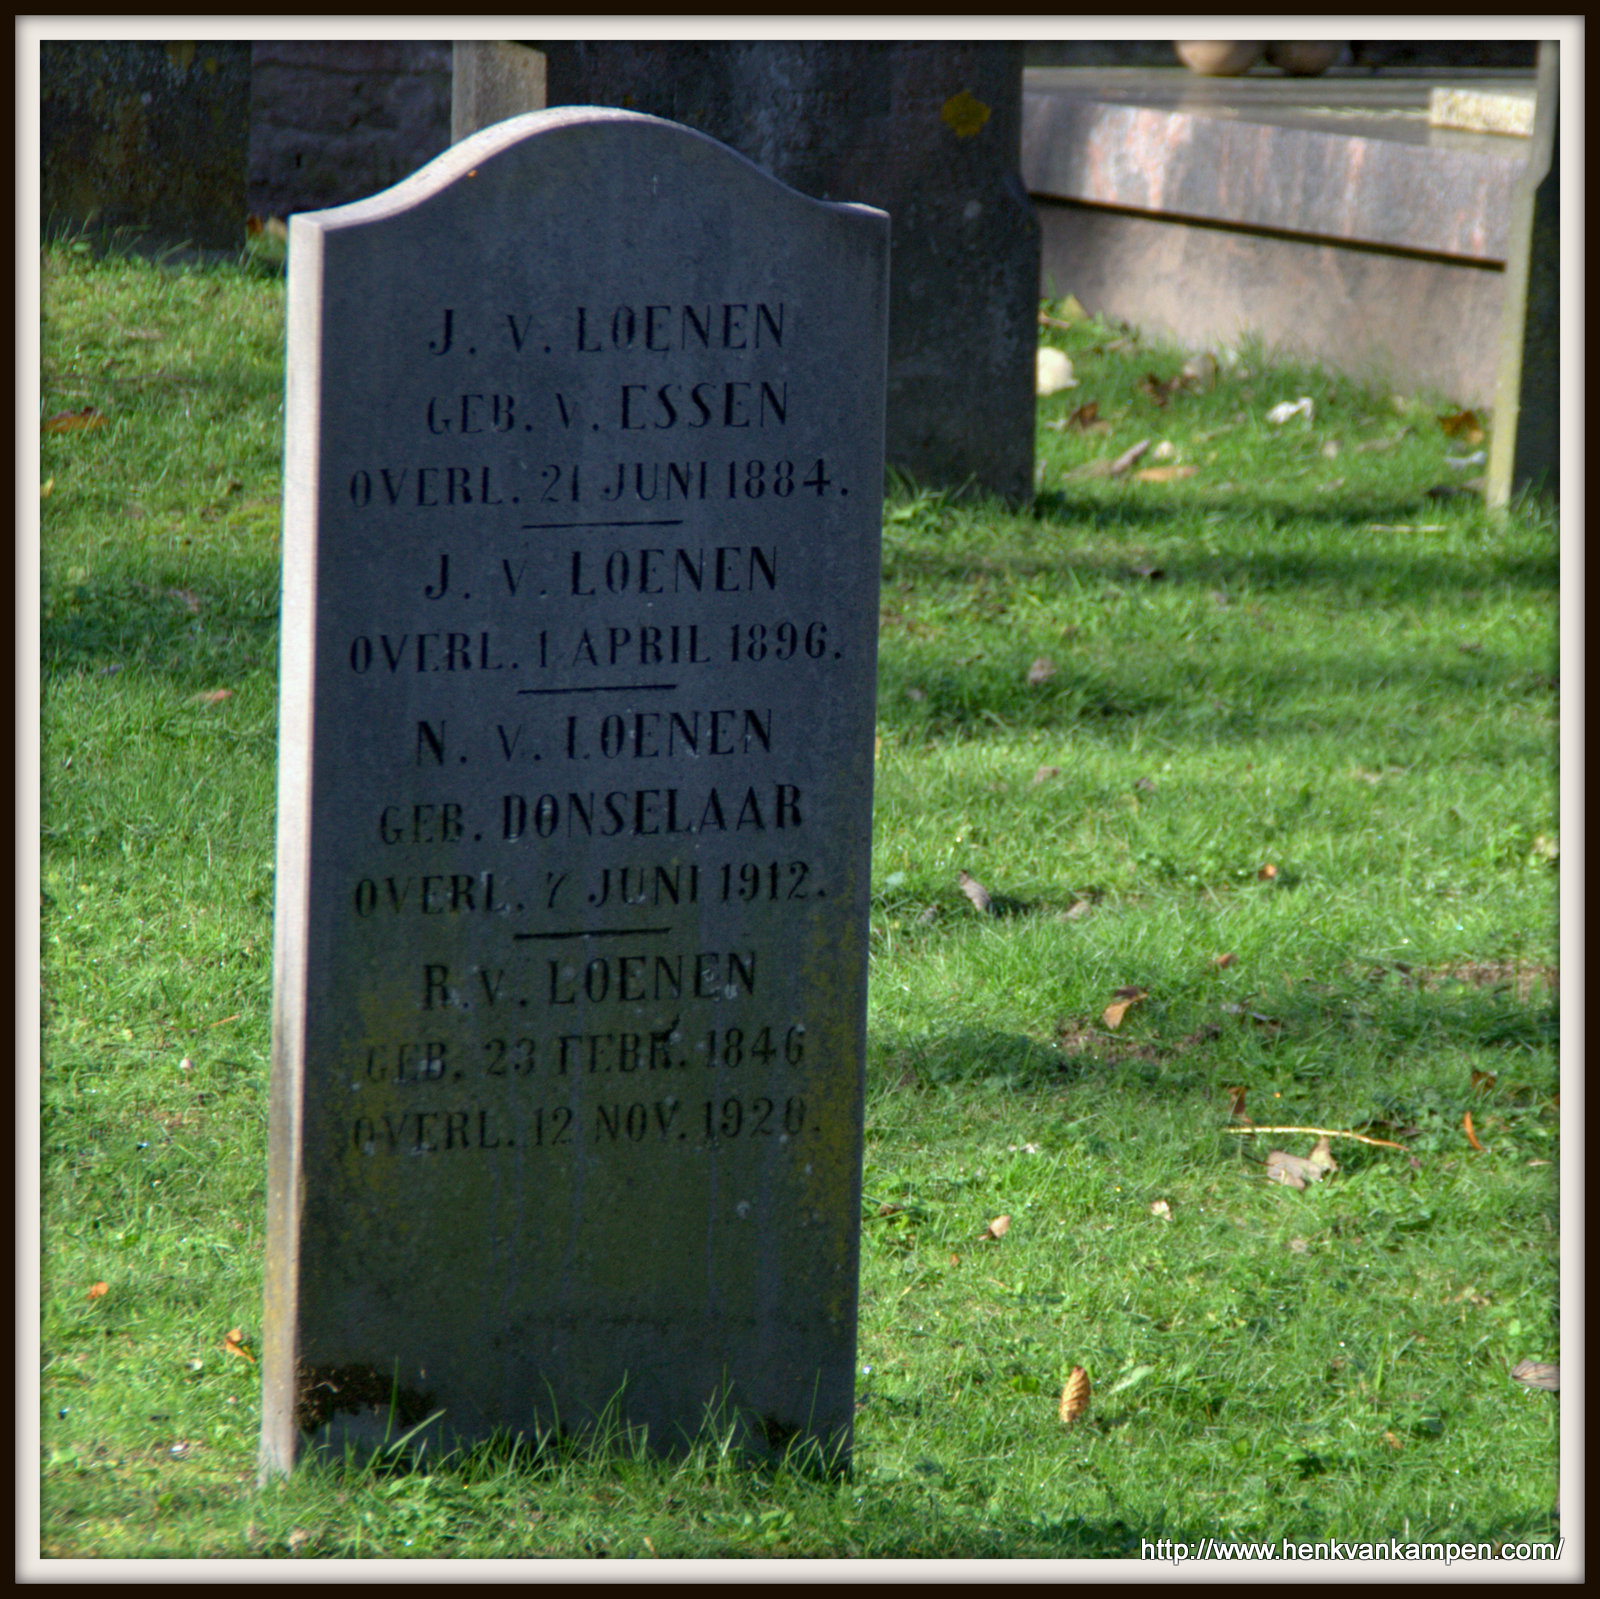 Van Loenen family grave, cemetery of Oud Leusden